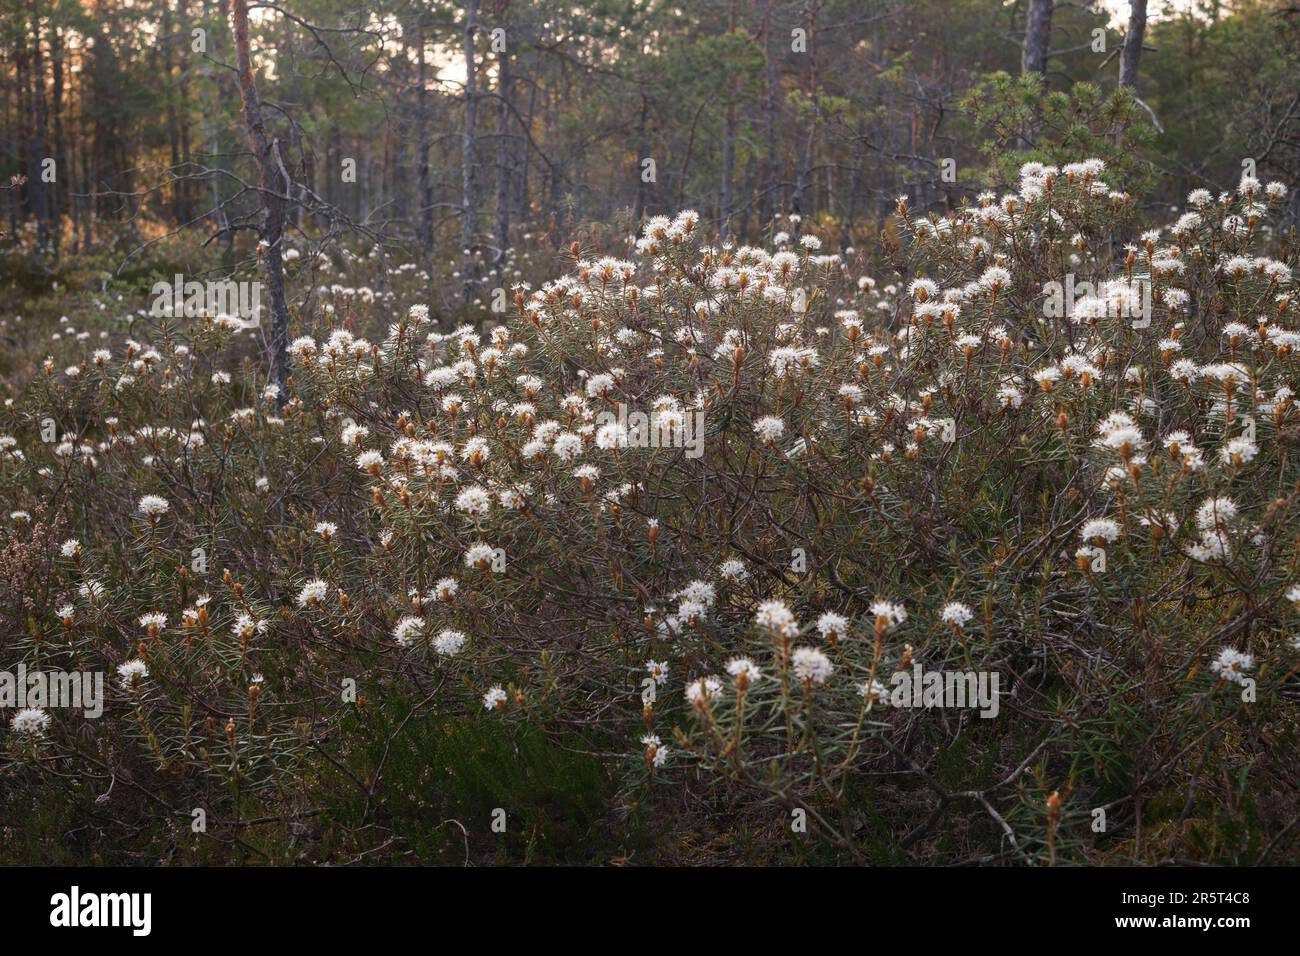 White flowers of small  bush in the bog, flowering Marsh Labrador Tea bush in the morning light Stock Photo